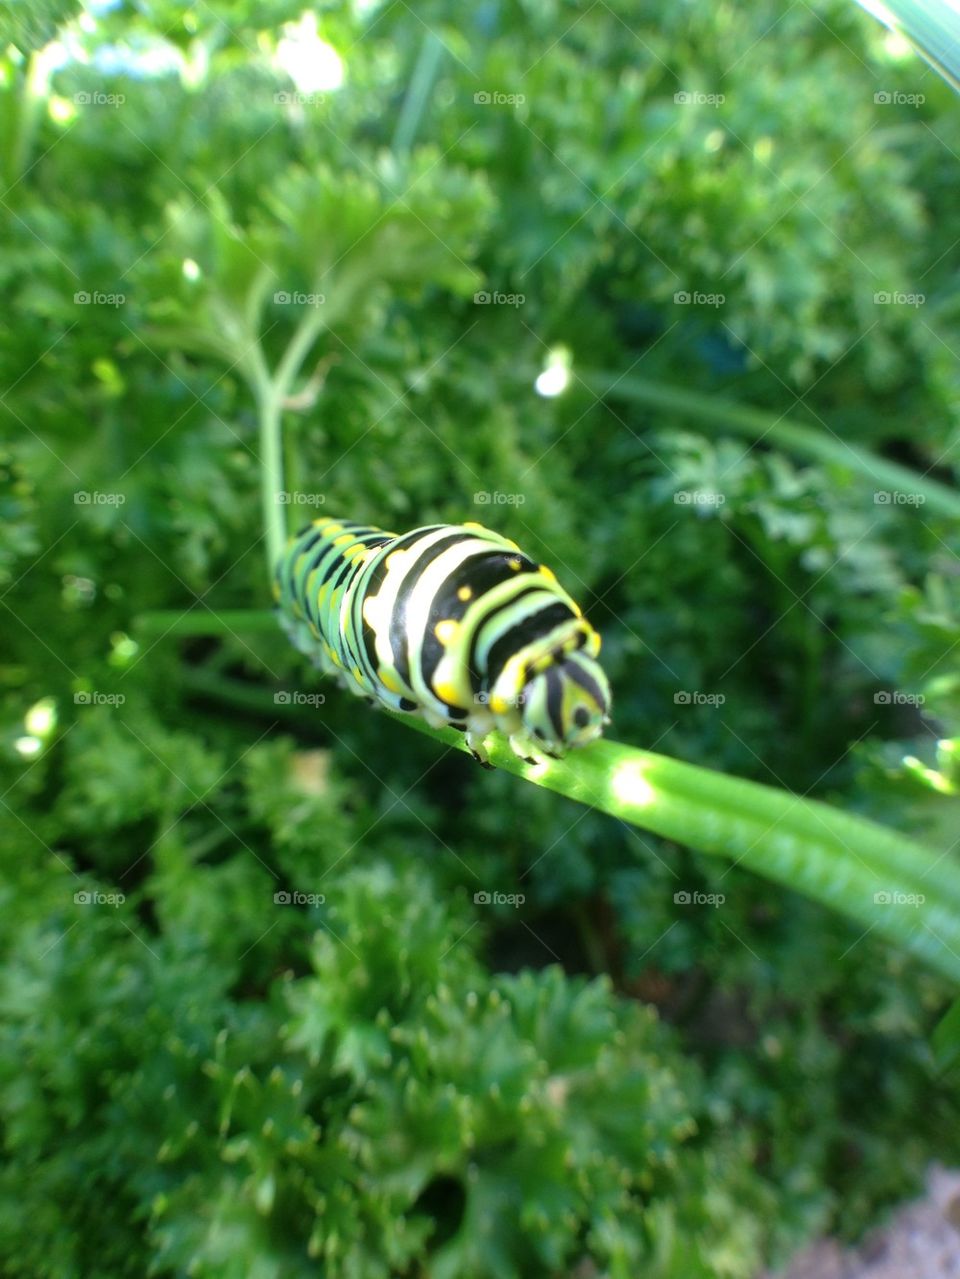 Caterpillar in my garden